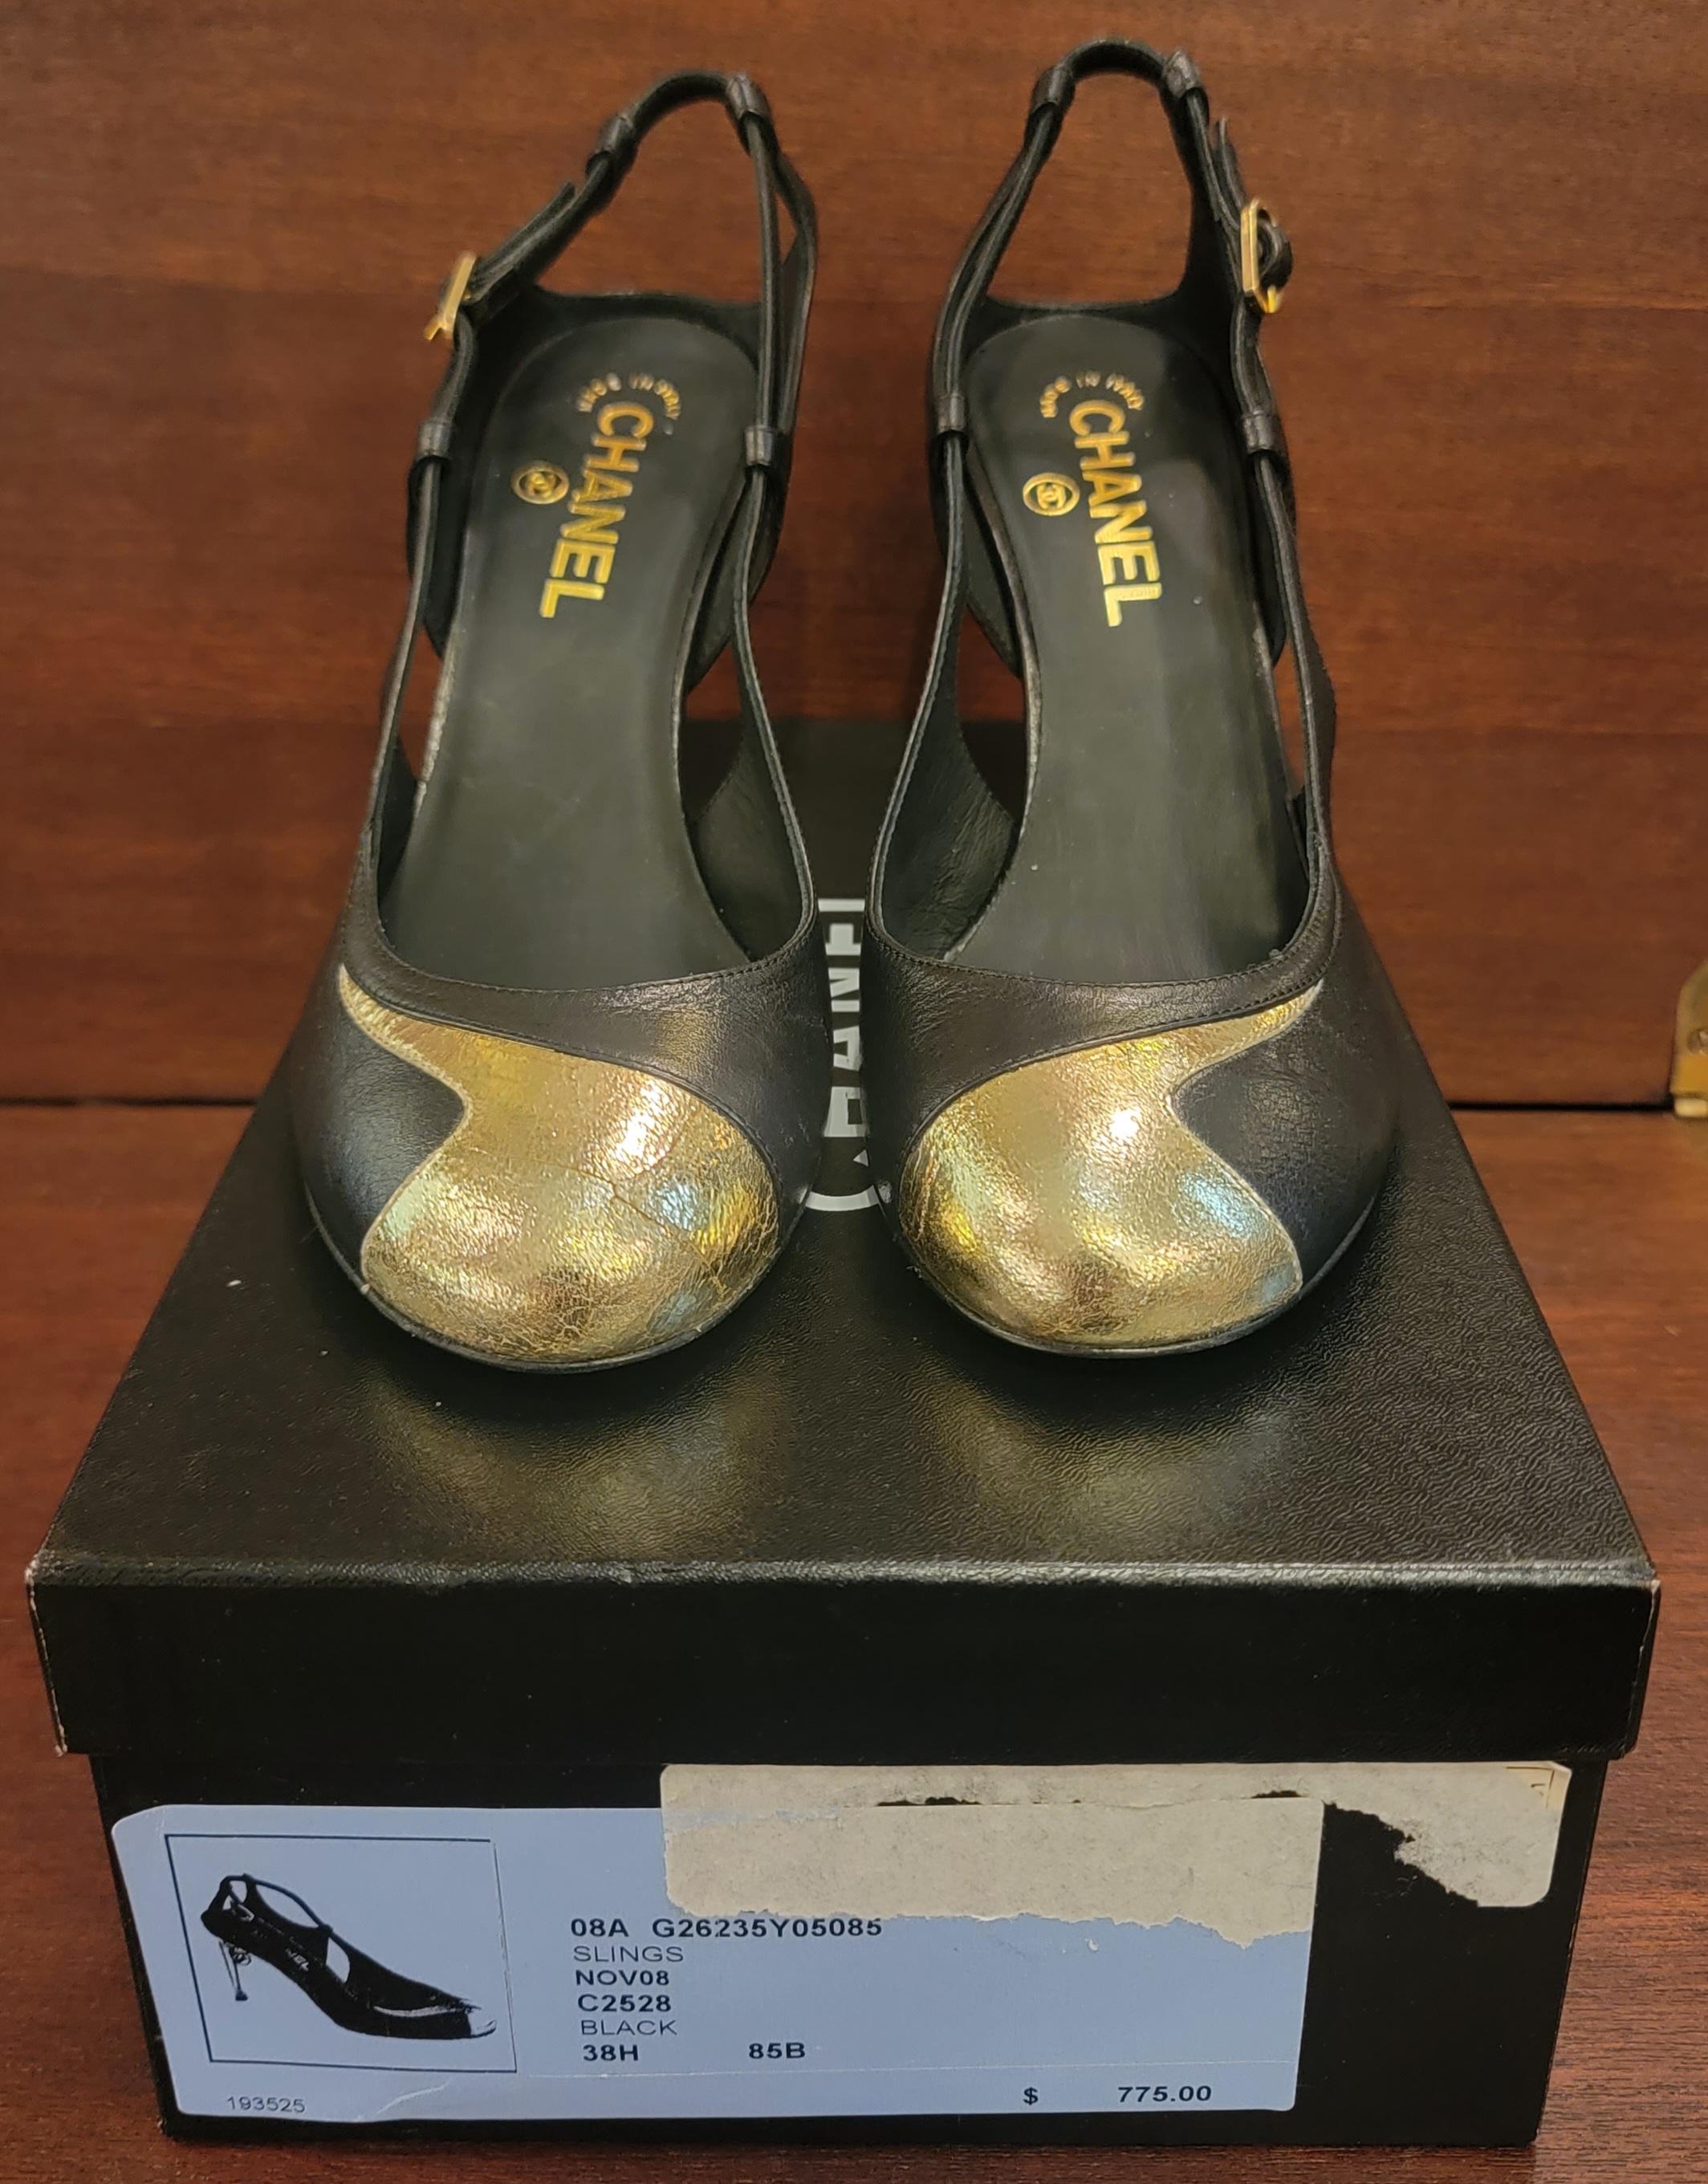 Brand new Rare classic Chanel Size 38.5 High Heel Shoes Gold Accents. La semelle des talons est de couleur dorée, les talons ont un accent boule avec le double CC sur eux. La chaussure est en cuir noir. 
